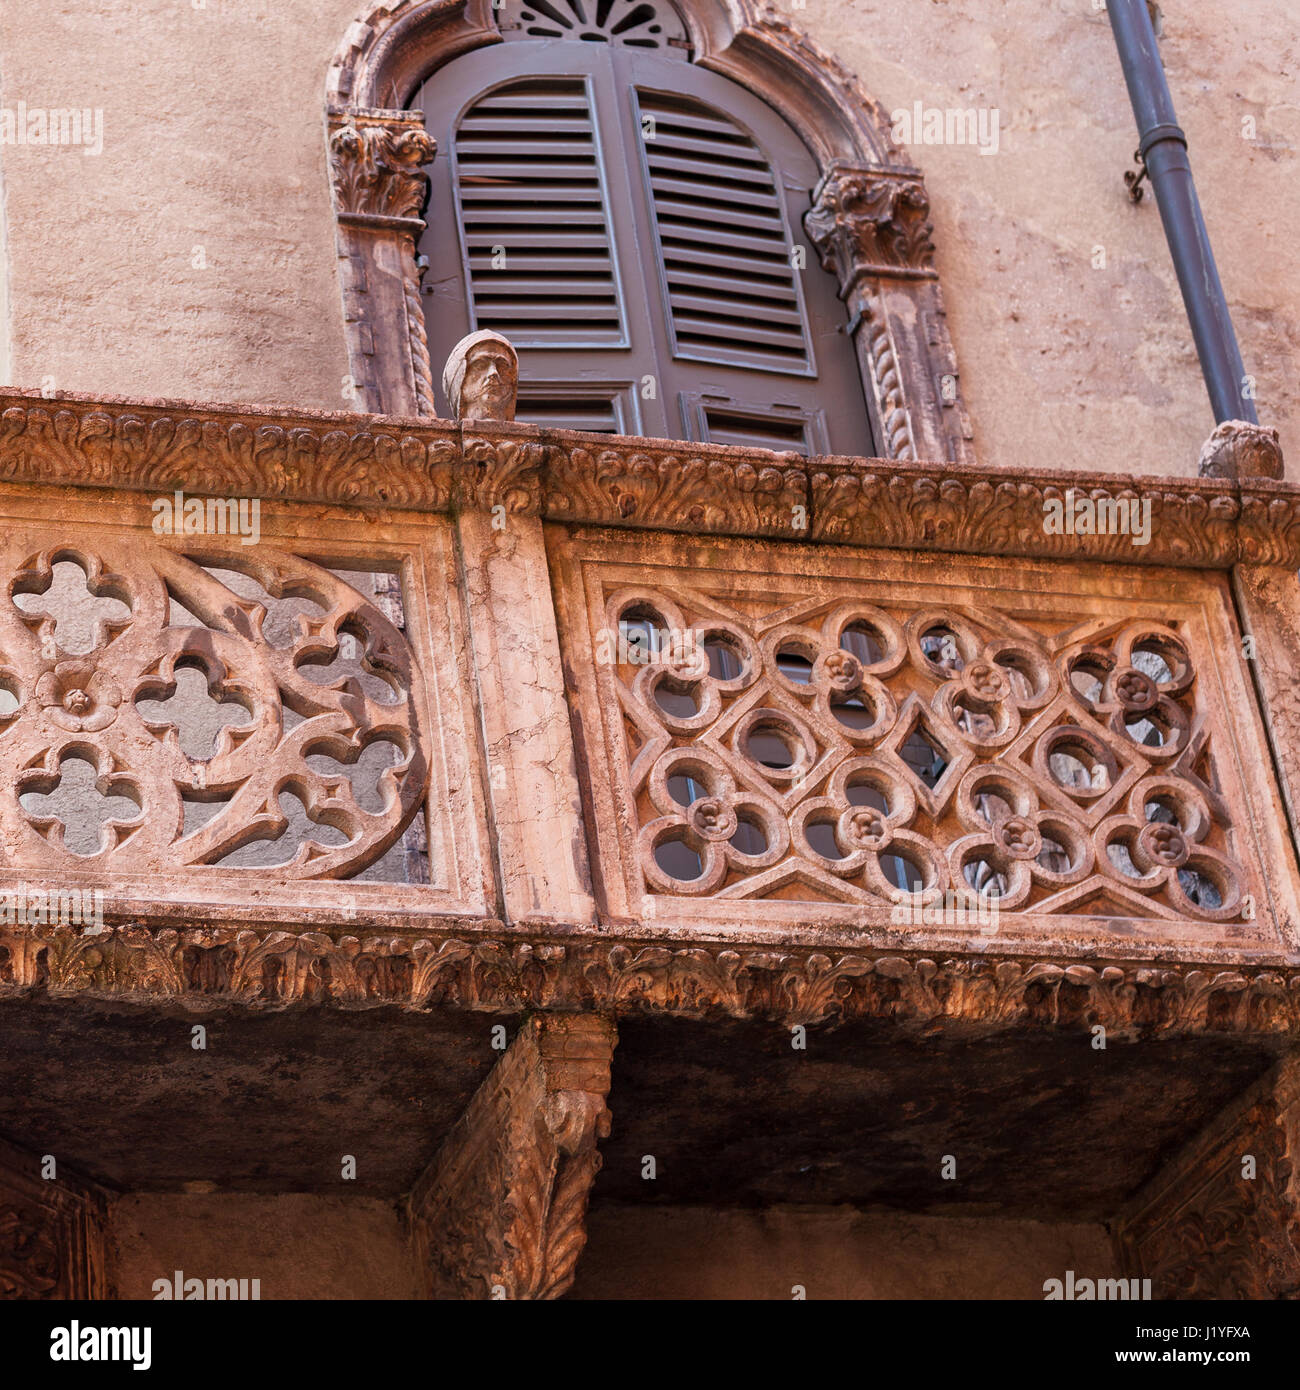 Voyage d'Italie - cité médiévale de decoraion vieille maison urbaine dans la ville de Vérone au printemps Banque D'Images